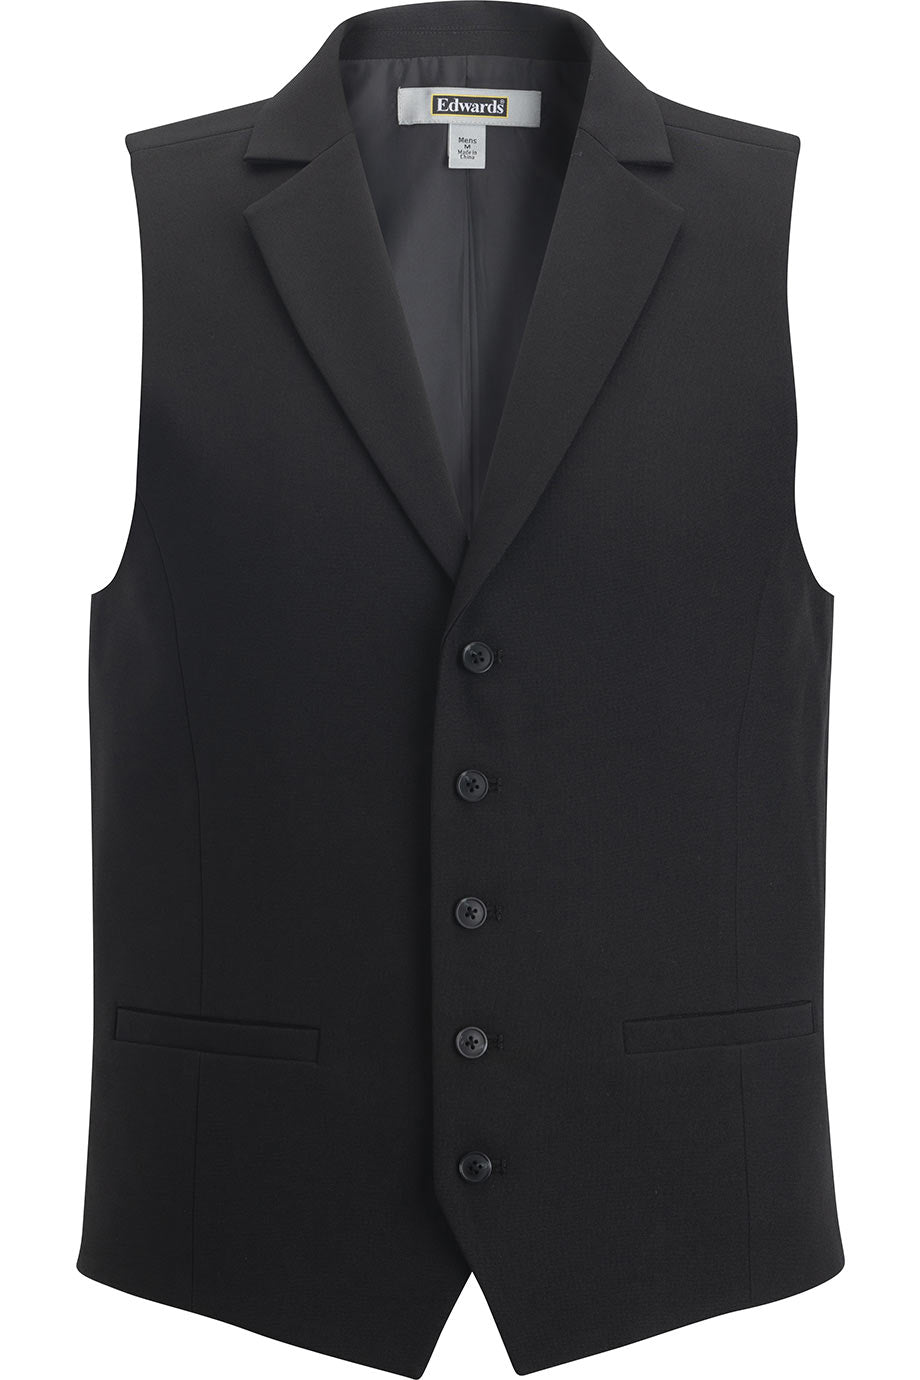 Edwards S Men's Dress Lapel Vest - Black